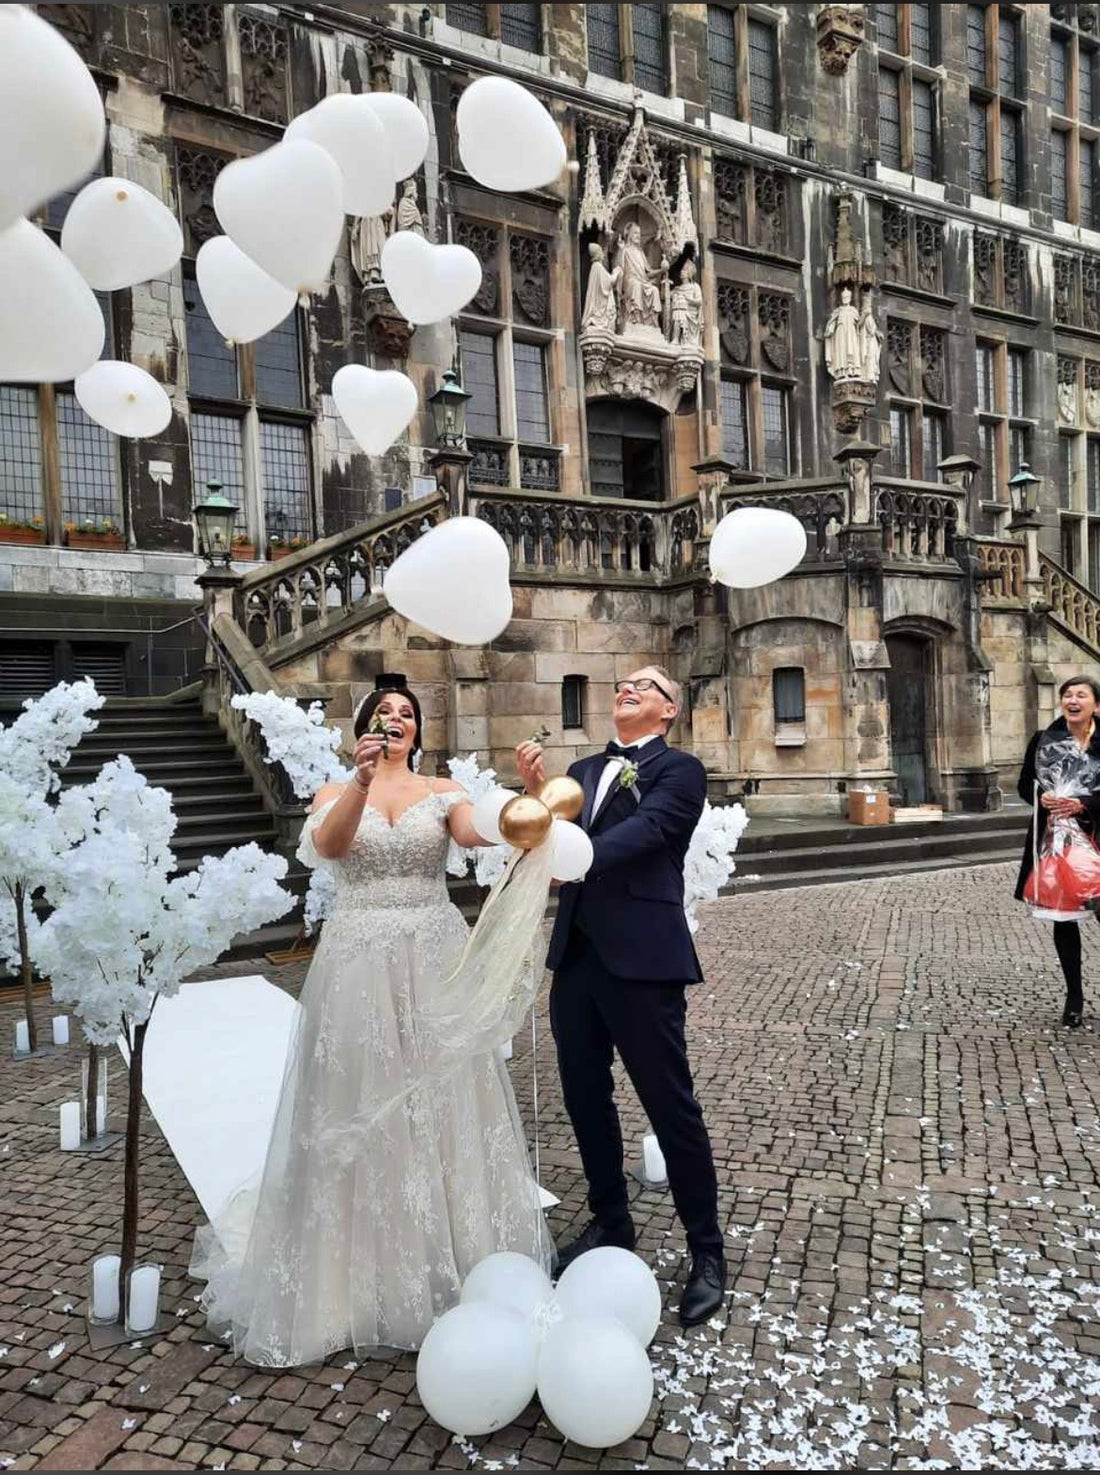 Bruiloft Pop Up Ballon gevuld met hart ballonnen (gepersonaliseerd) alleen af te halen!